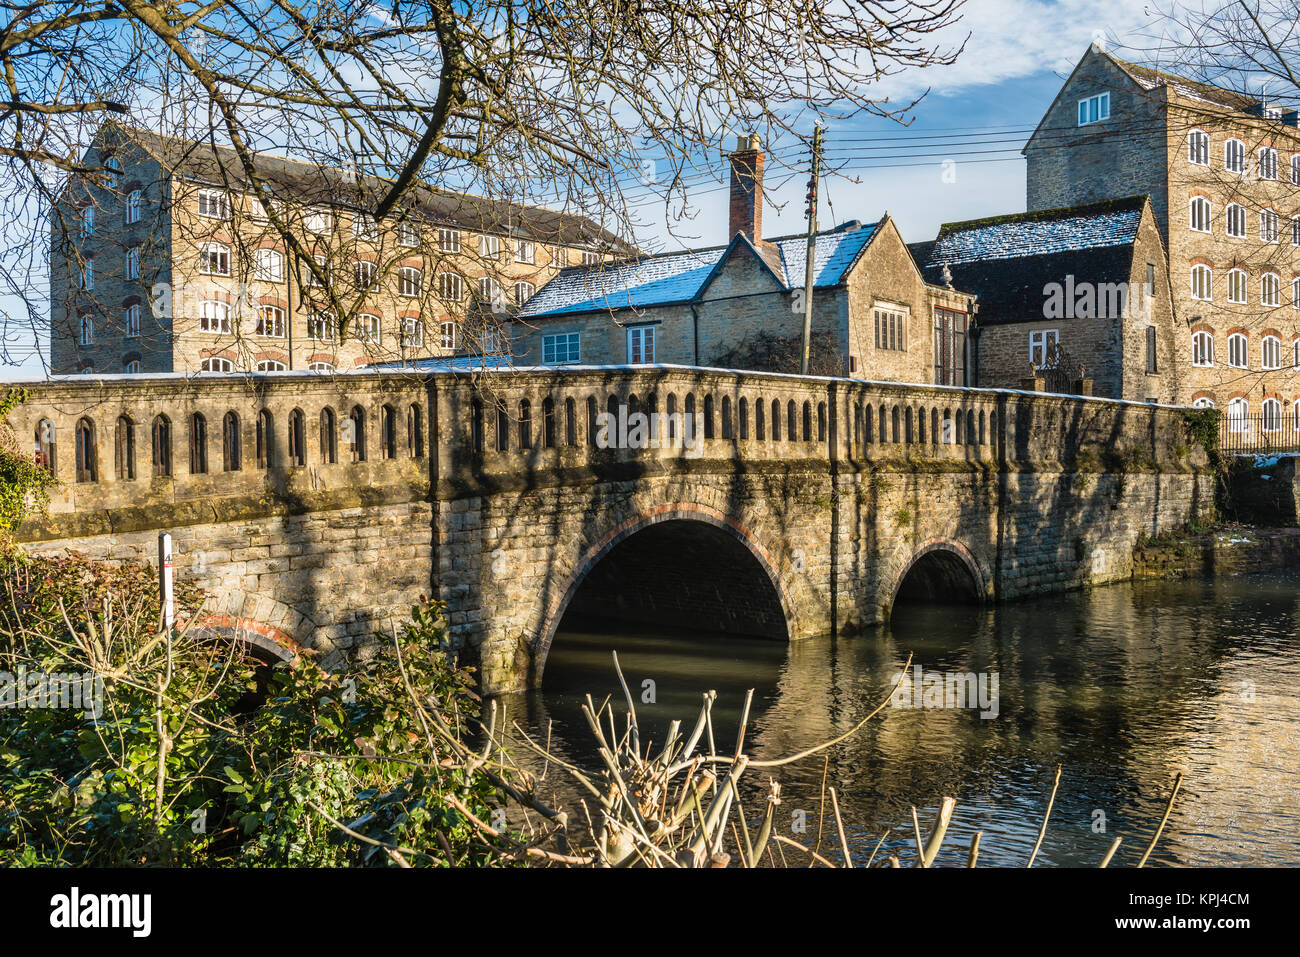 Einen kurzen Spaziergang vom Stadtzentrum, St Johns Brücke überquert den Fluss Avon zu den historischen Silk Mills am Rande des Wiltshire Stadt Malmesbury. Stockfoto